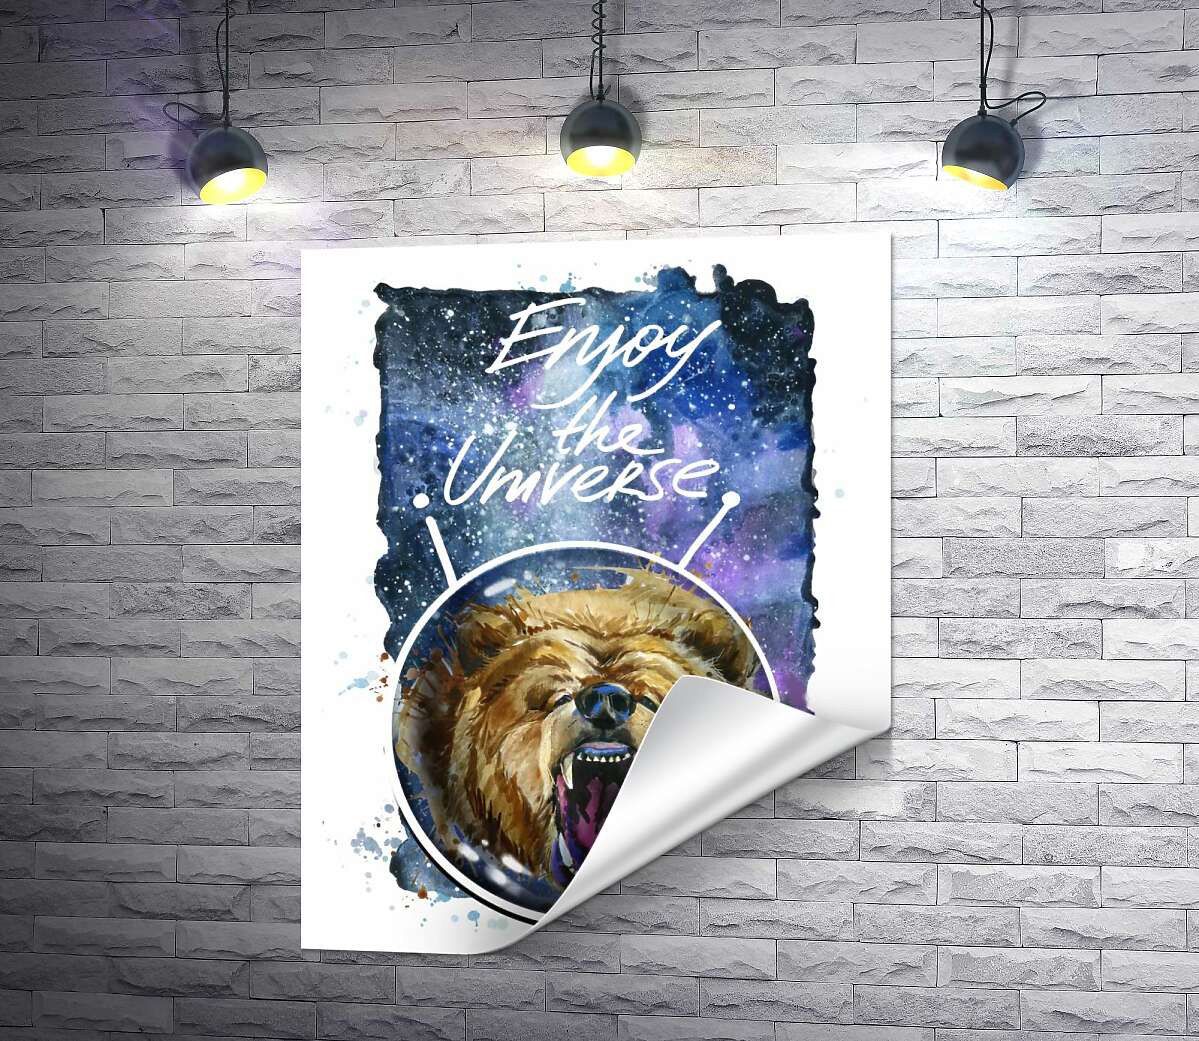 печать Медведь в шлеме космонавта с надписью "Enjoy the Universe"